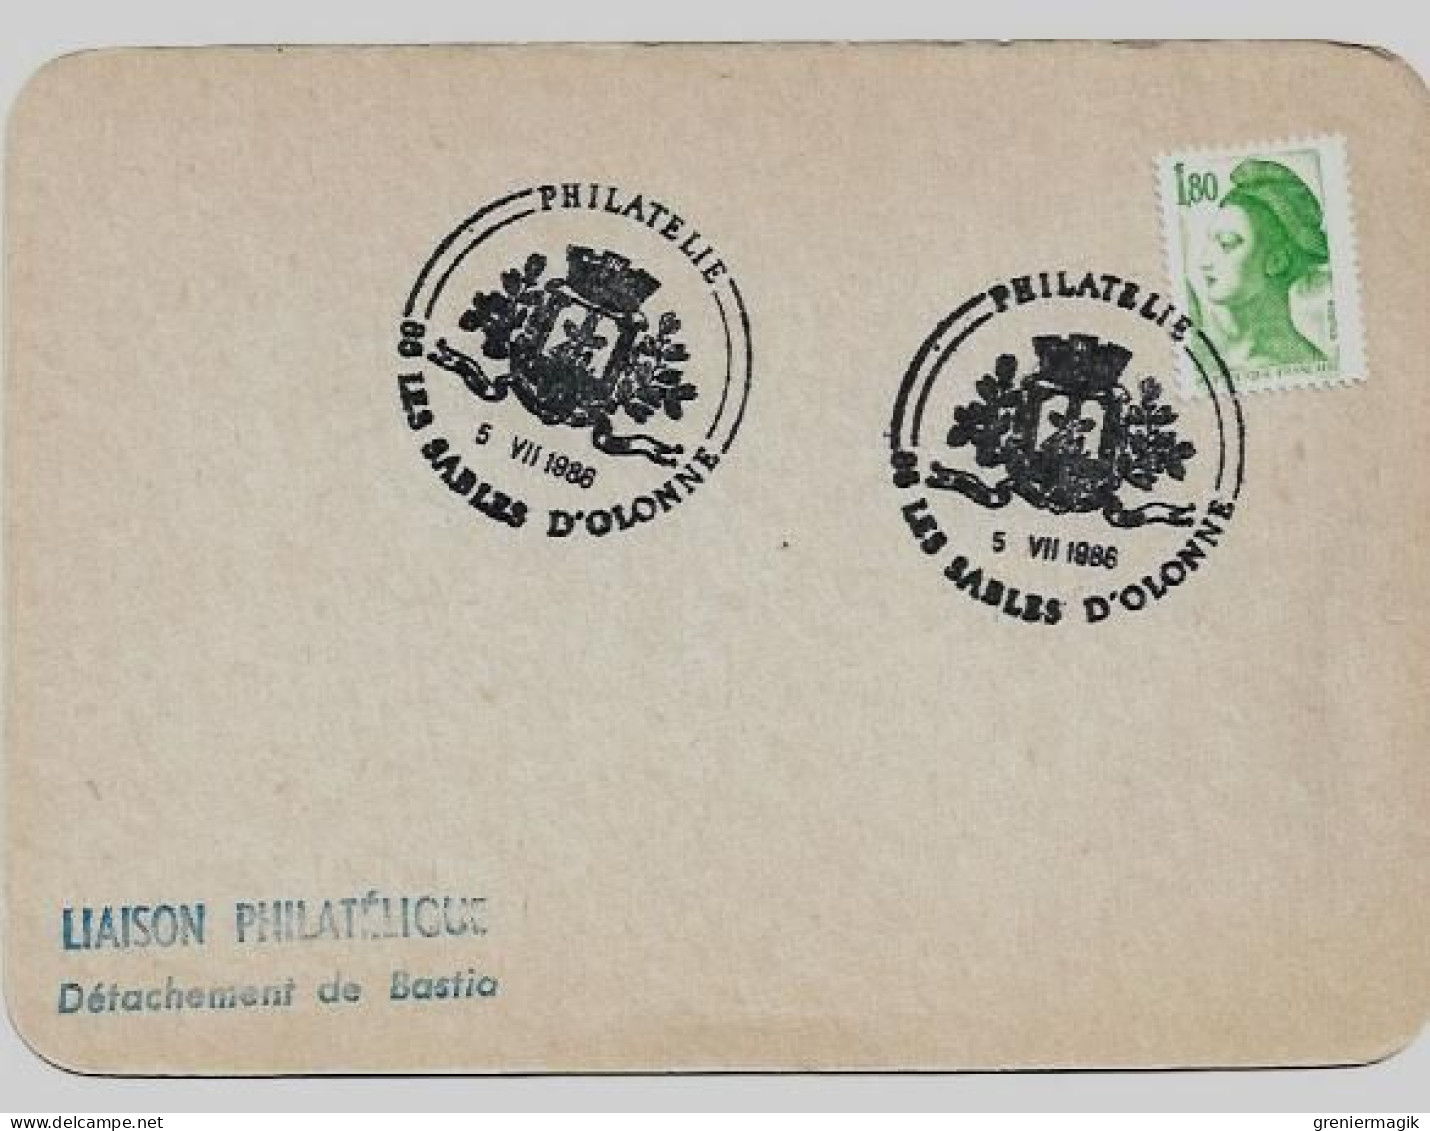 N°2375  Cachet Temporaire Philatélie 85 Les Sables D'Olonne 5 VII 1986 - Liaison Philatélique Bastia - Gandon 1,80 Vert - Temporary Postmarks